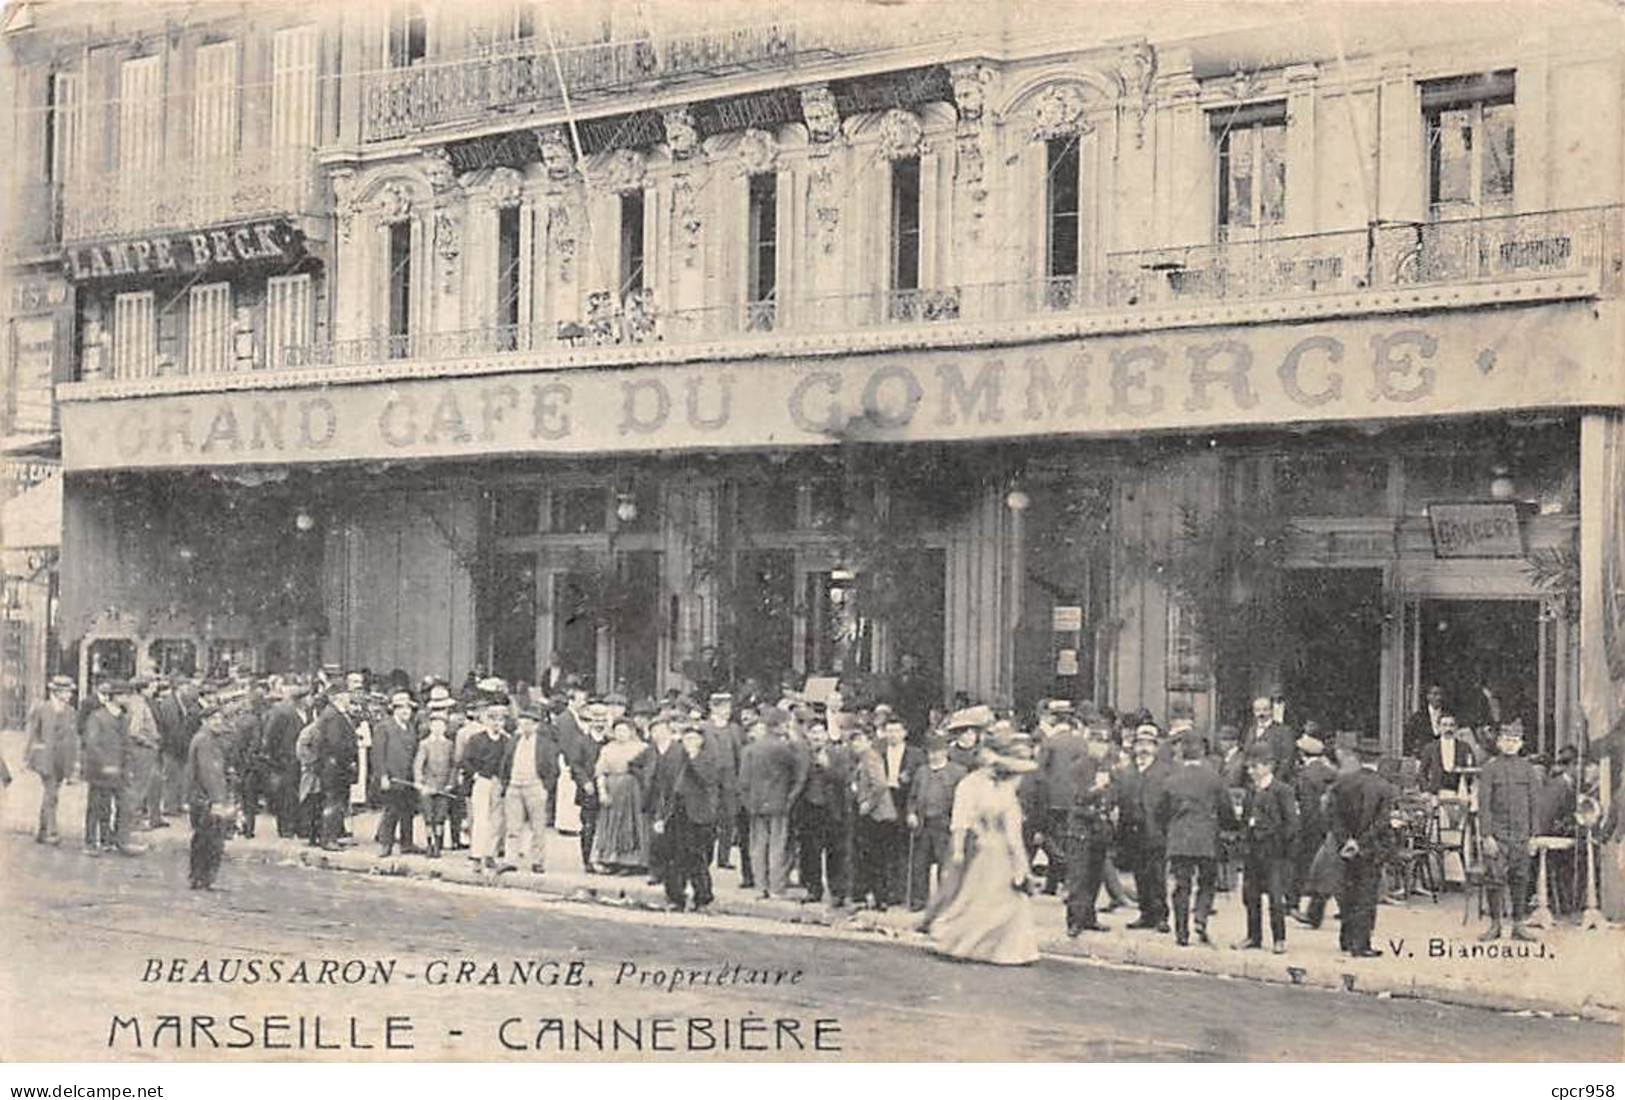 13 - MARSEILLE - SAN54935 - Cannebière - Beaussaron Grange Propriétaire - Canebière, Stadtzentrum